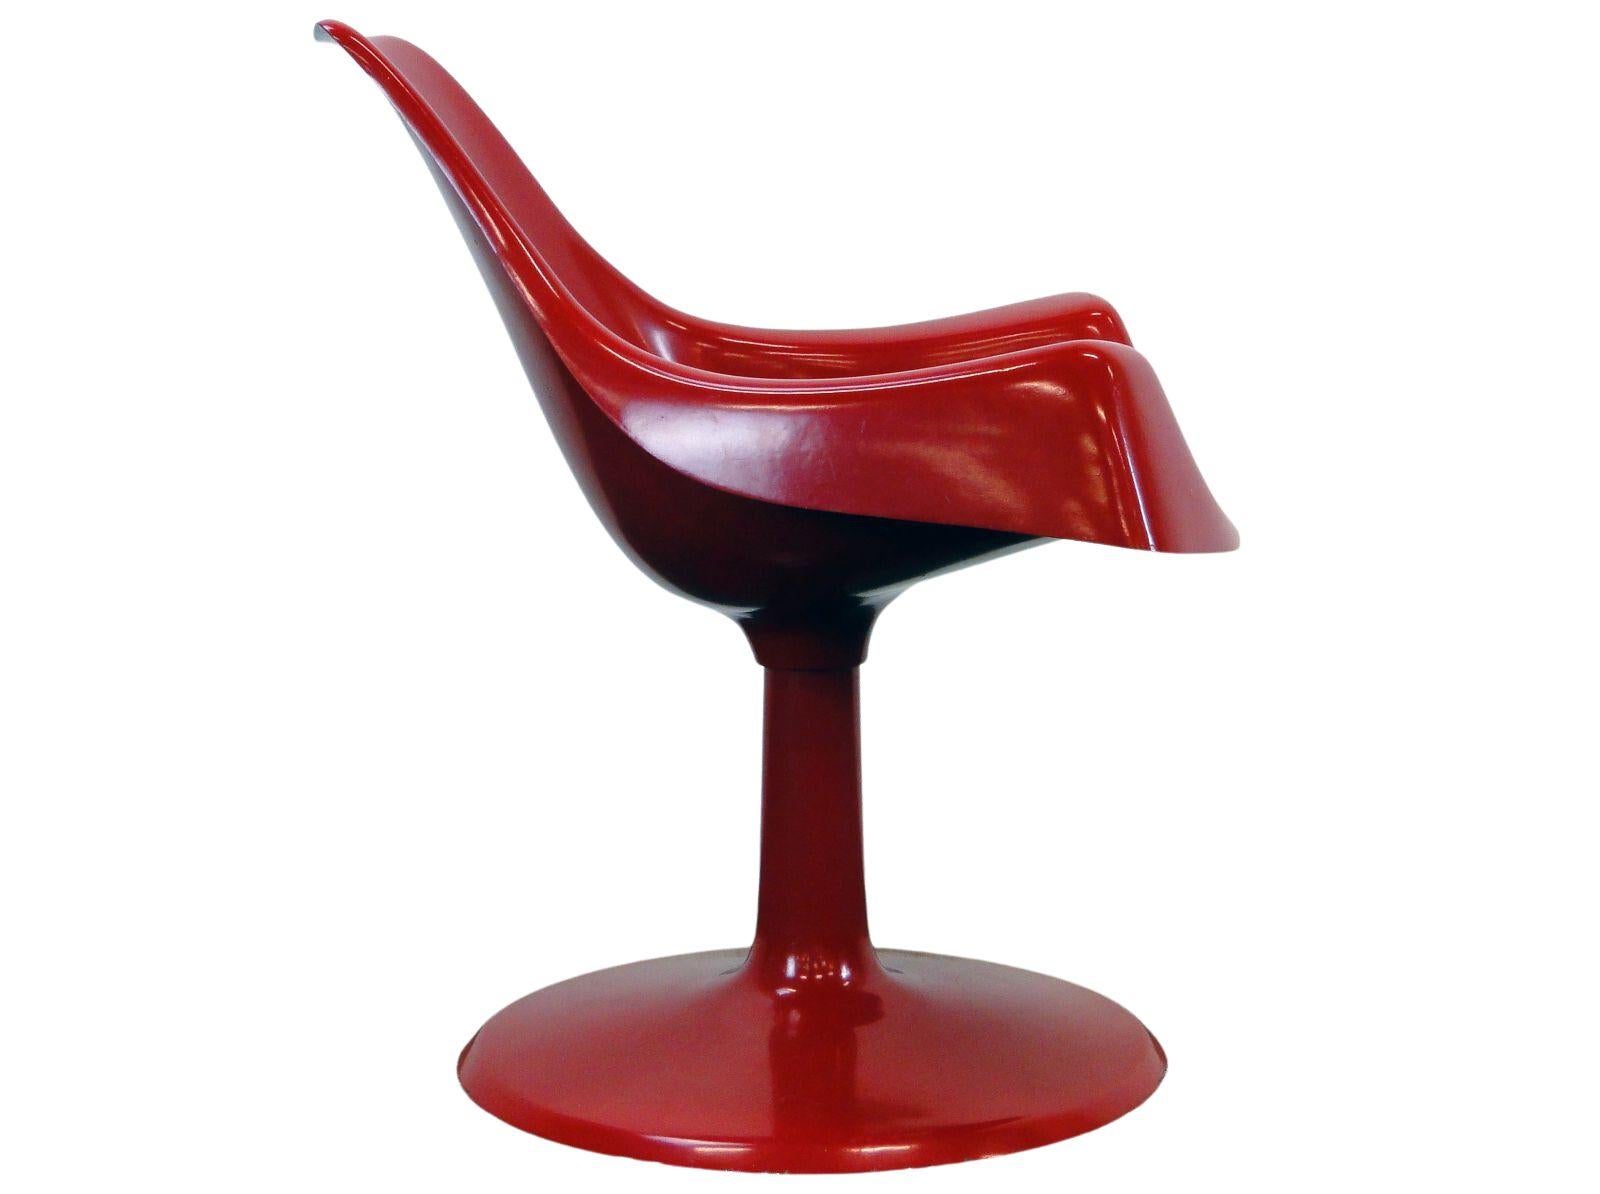 Stühle im Space-Age-Design, hergestellt aus Glasfaserharz. Sie wurden in begrenzten Mengen hergestellt. Entwurf des ungarischen Designers Péter Ghyczy. Die Stühle tragen noch immer das prestigeträchtige Label der Jury des Ipaművészeti Vállalat!